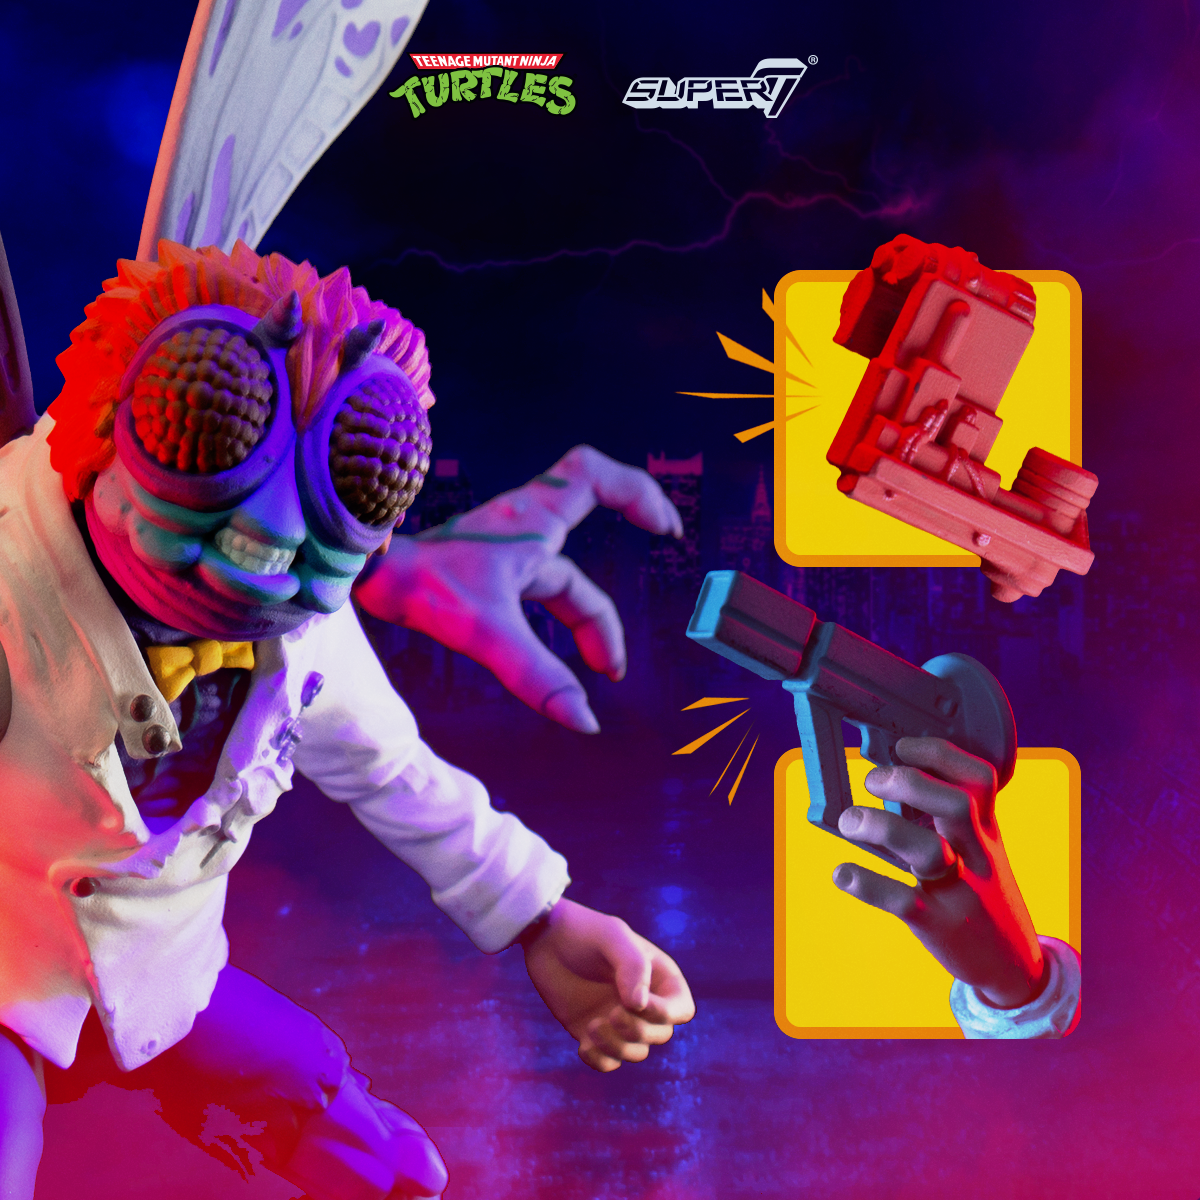 Teenage Mutant Ninja Turtles ULTIMATES!  W1 - Baxter Stockman Version 2